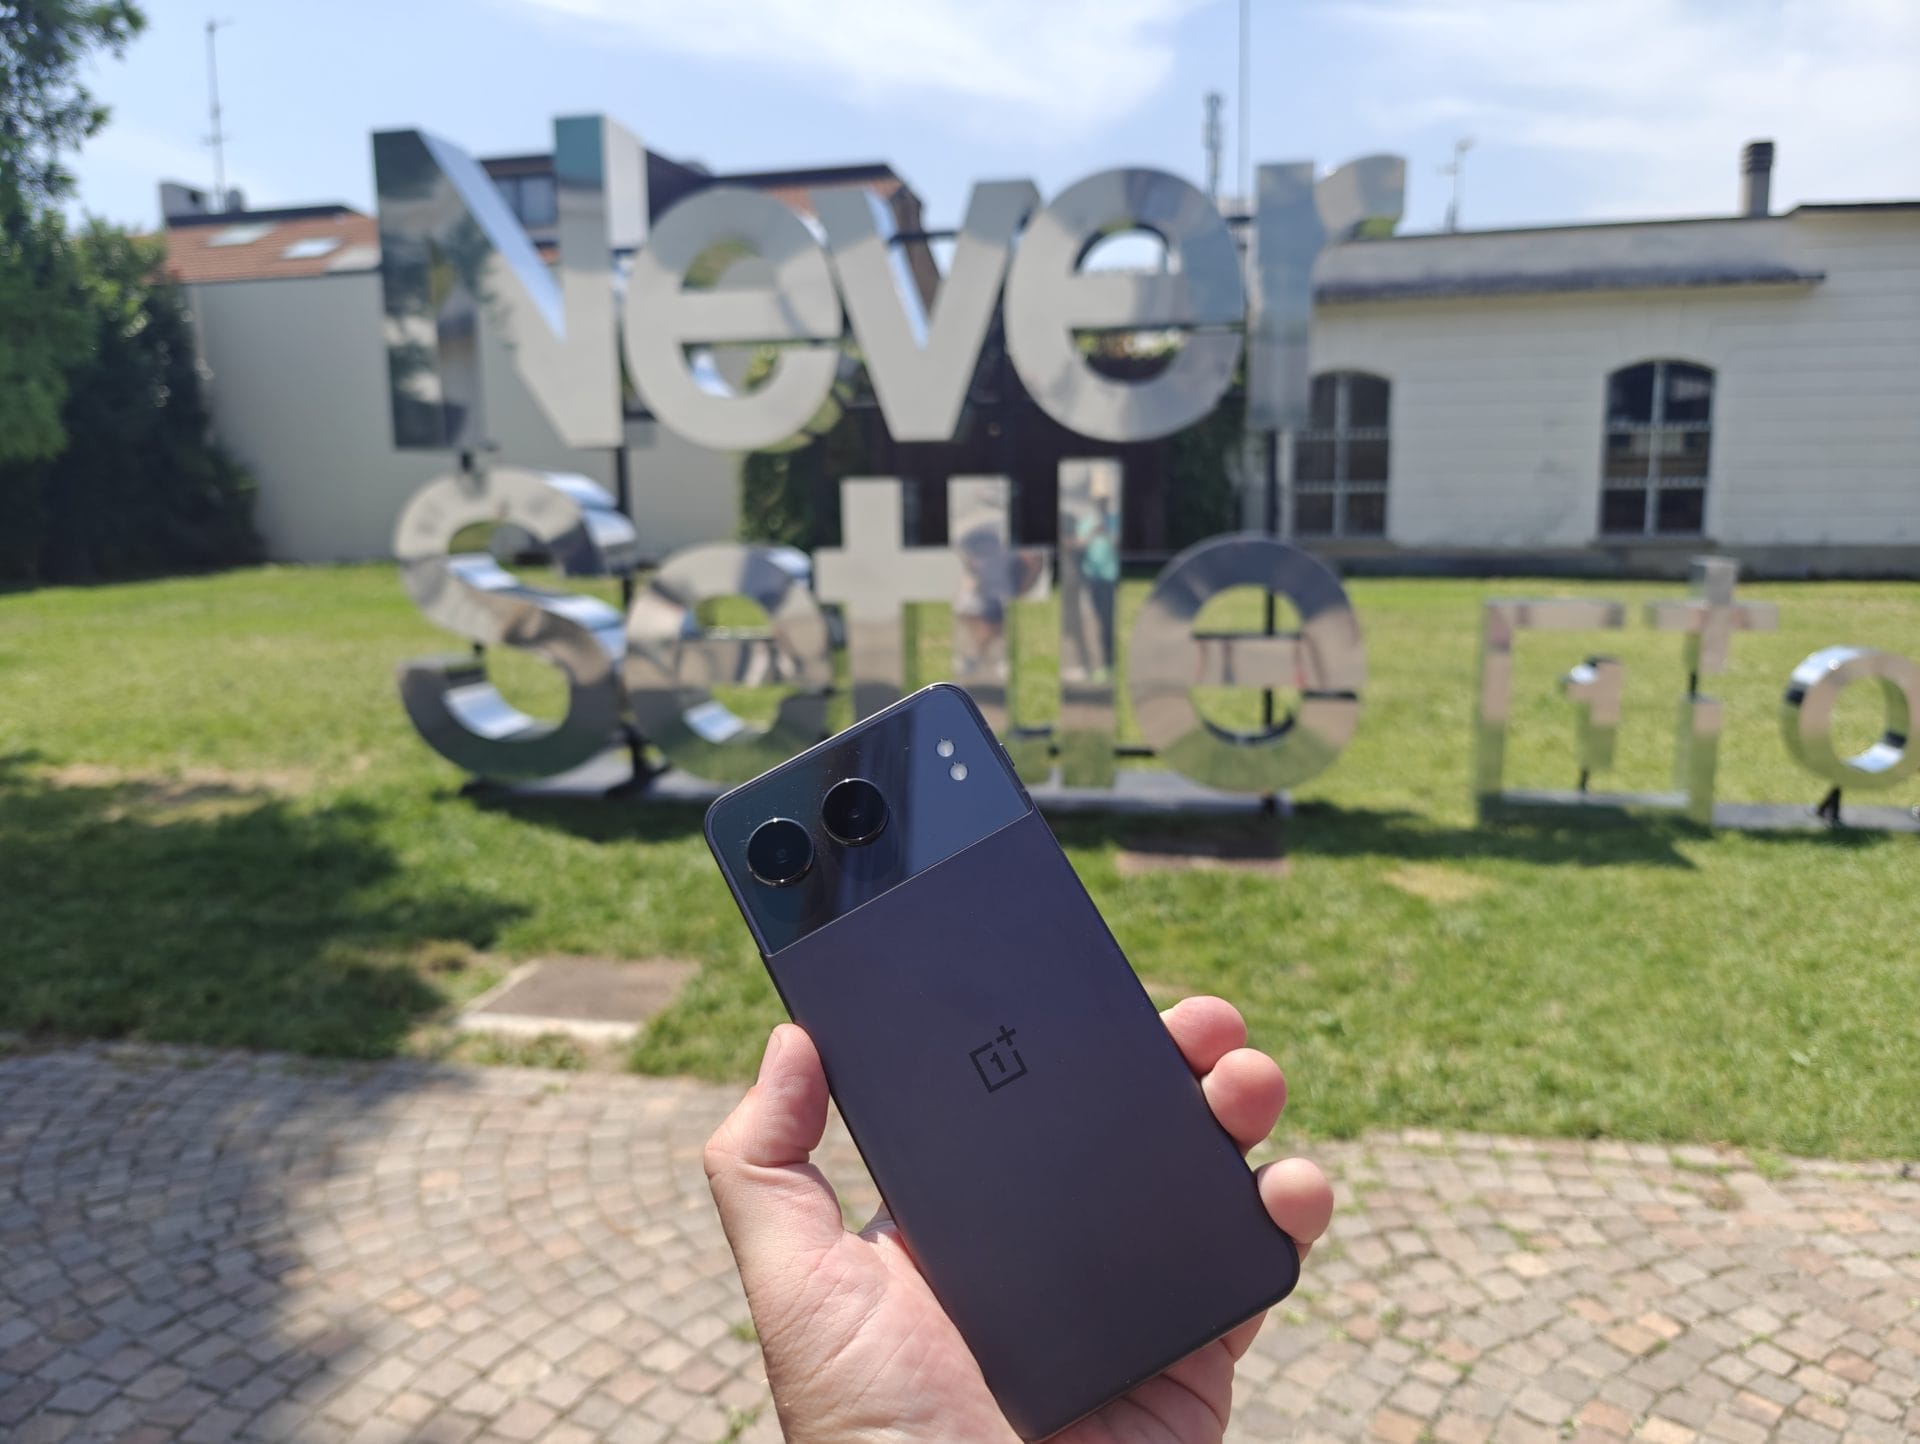 OnePlus onthult vier nieuwe producten in Milaan